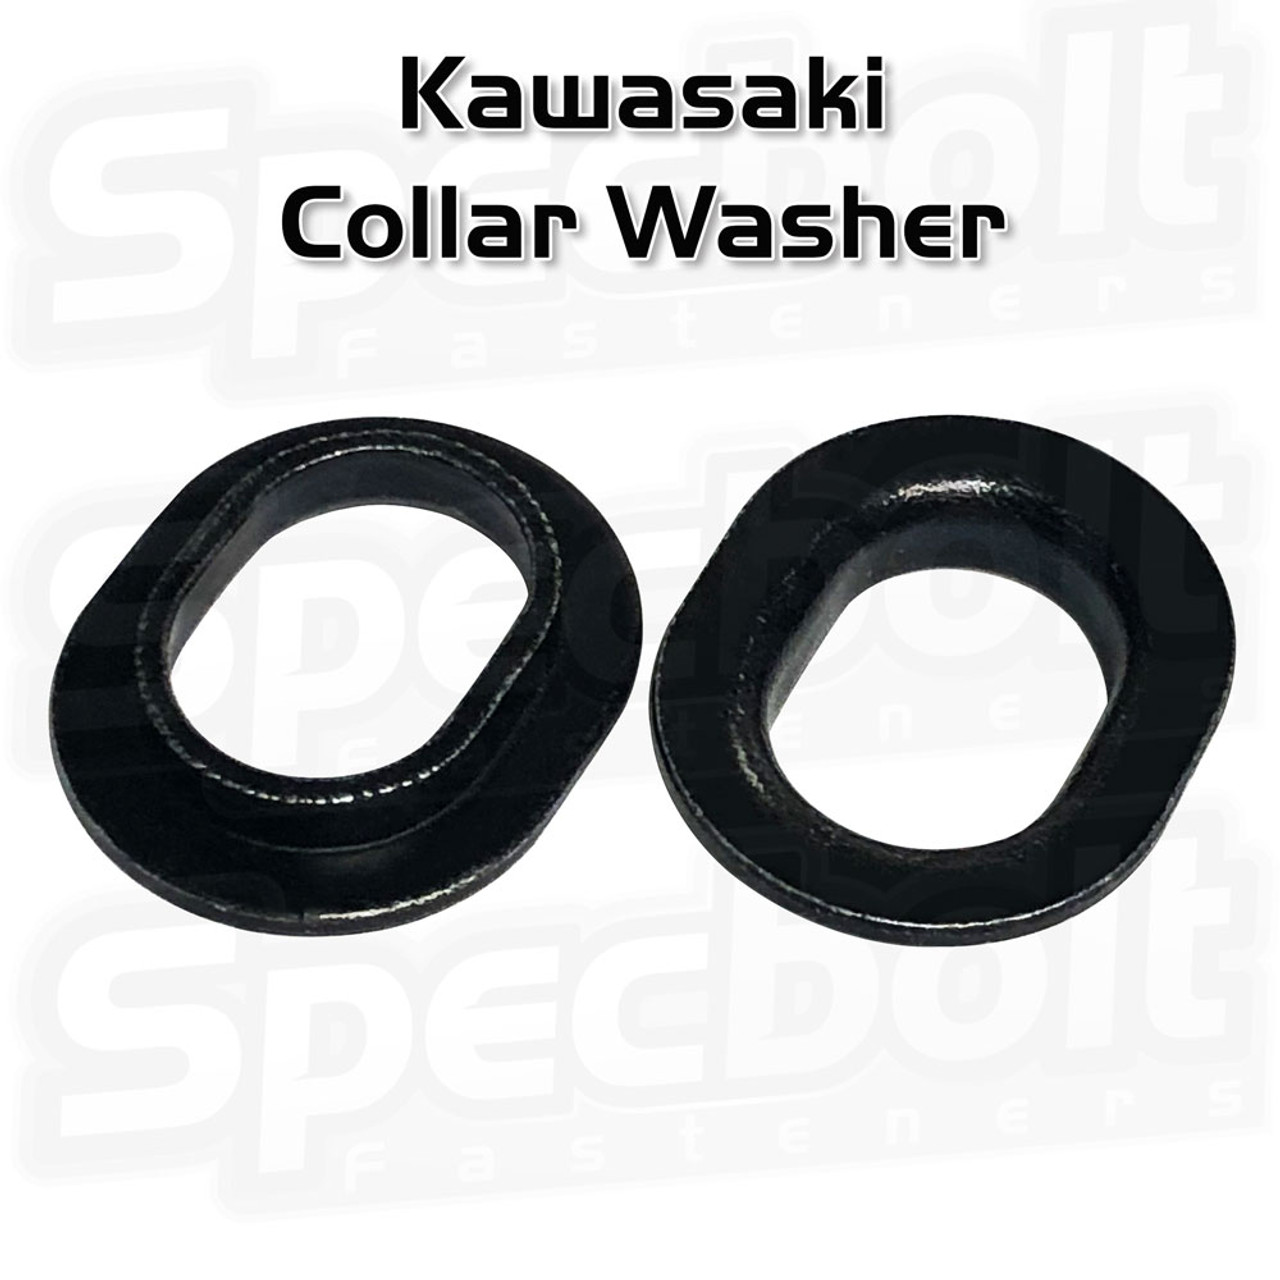 Kawasaki Collar Washer (Black Zinc)